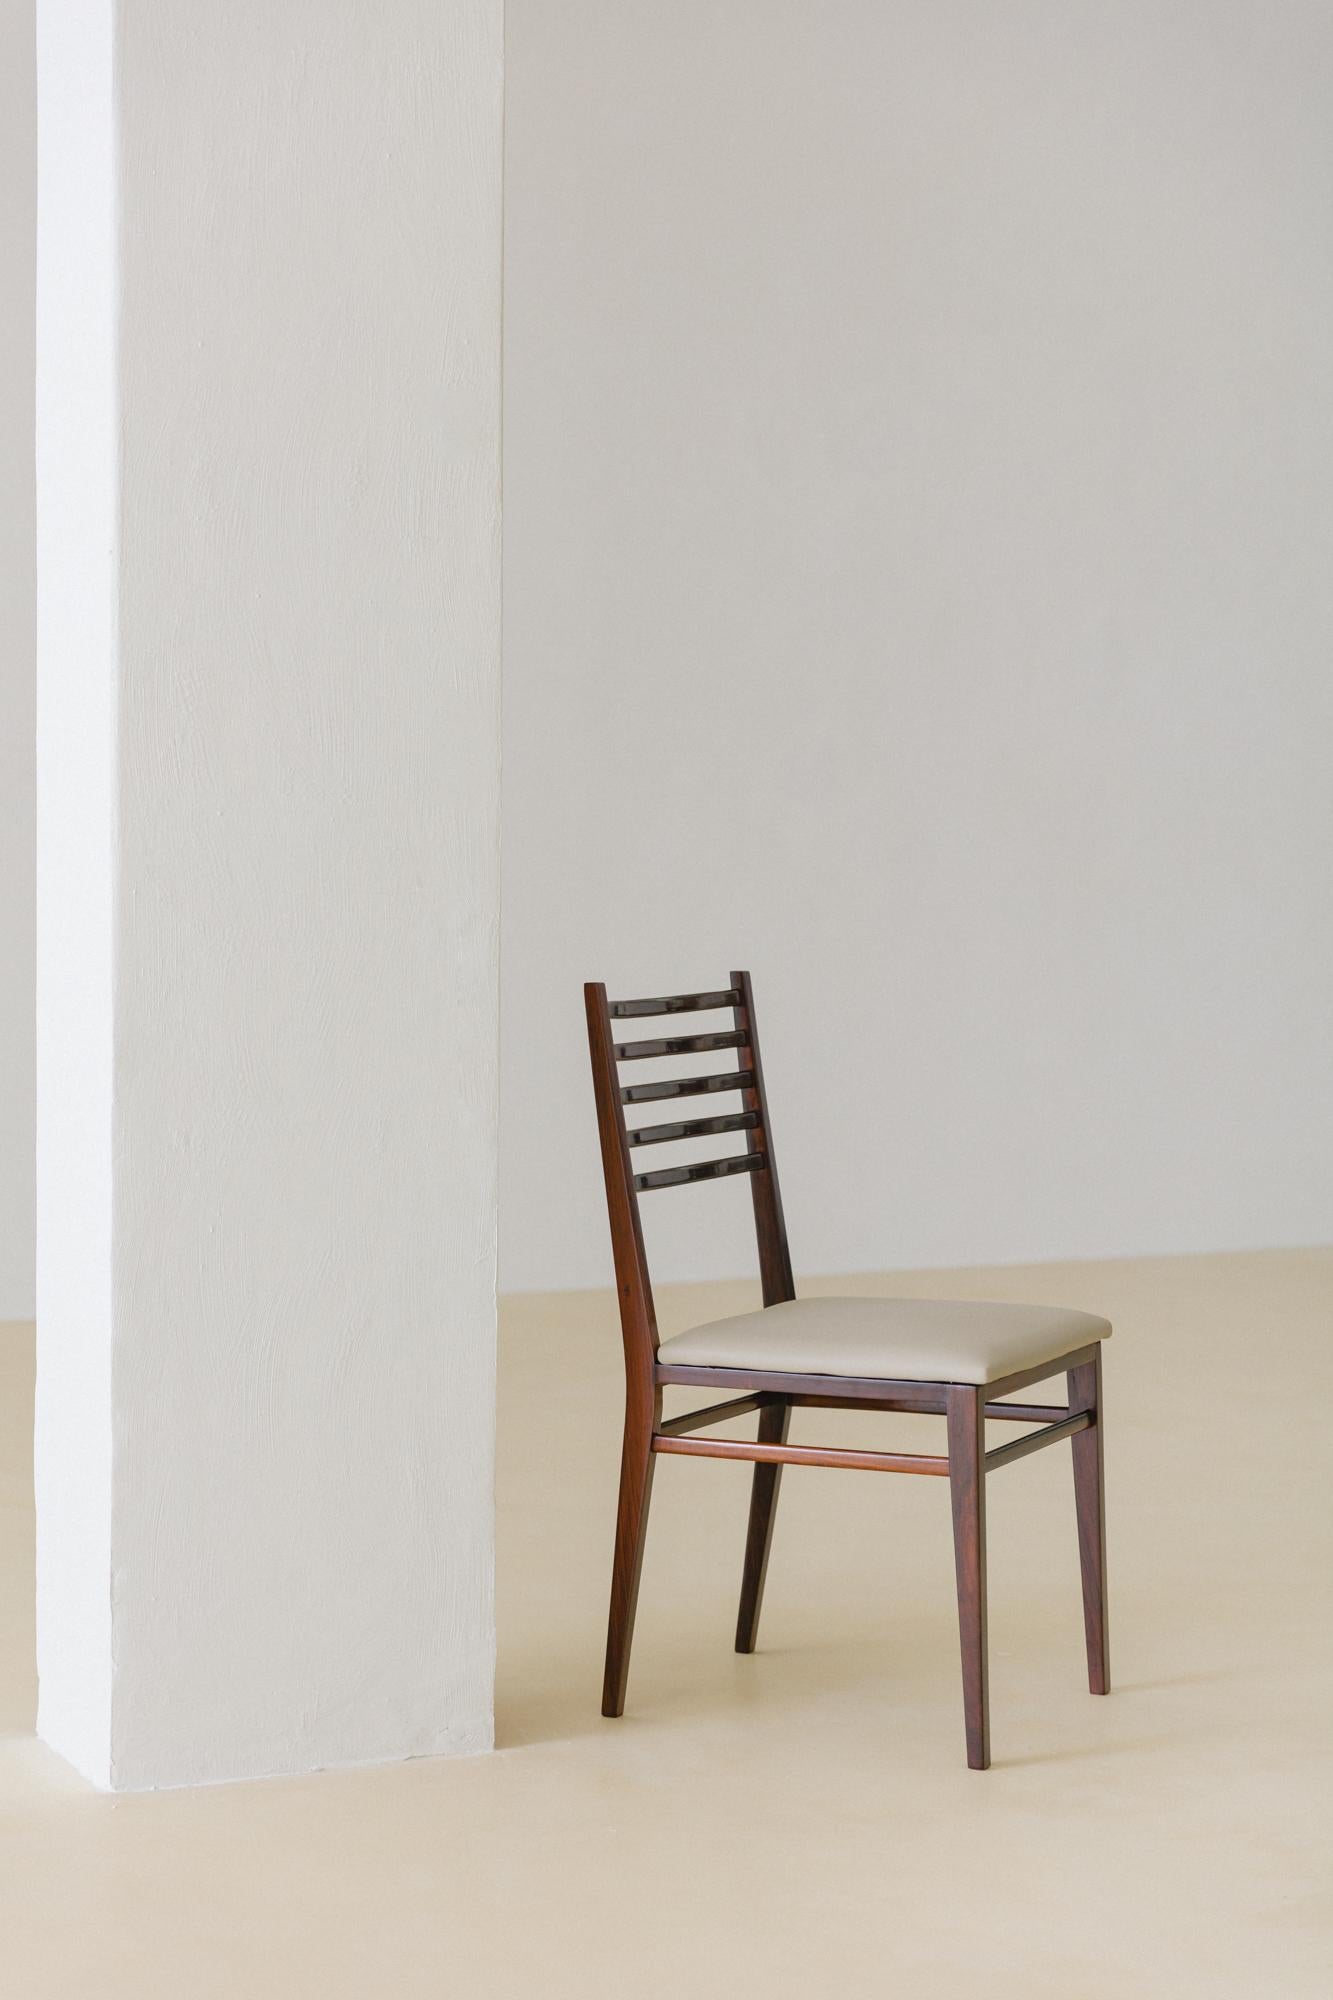 Cette chaise conçue par Geraldo de Barros a une structure légère en bois de rose massif, une caractéristique de la production d'Unilabor, qui utilisait des formes fines dans ses dessins pour une meilleure utilisation de ses matériaux. Le dossier est